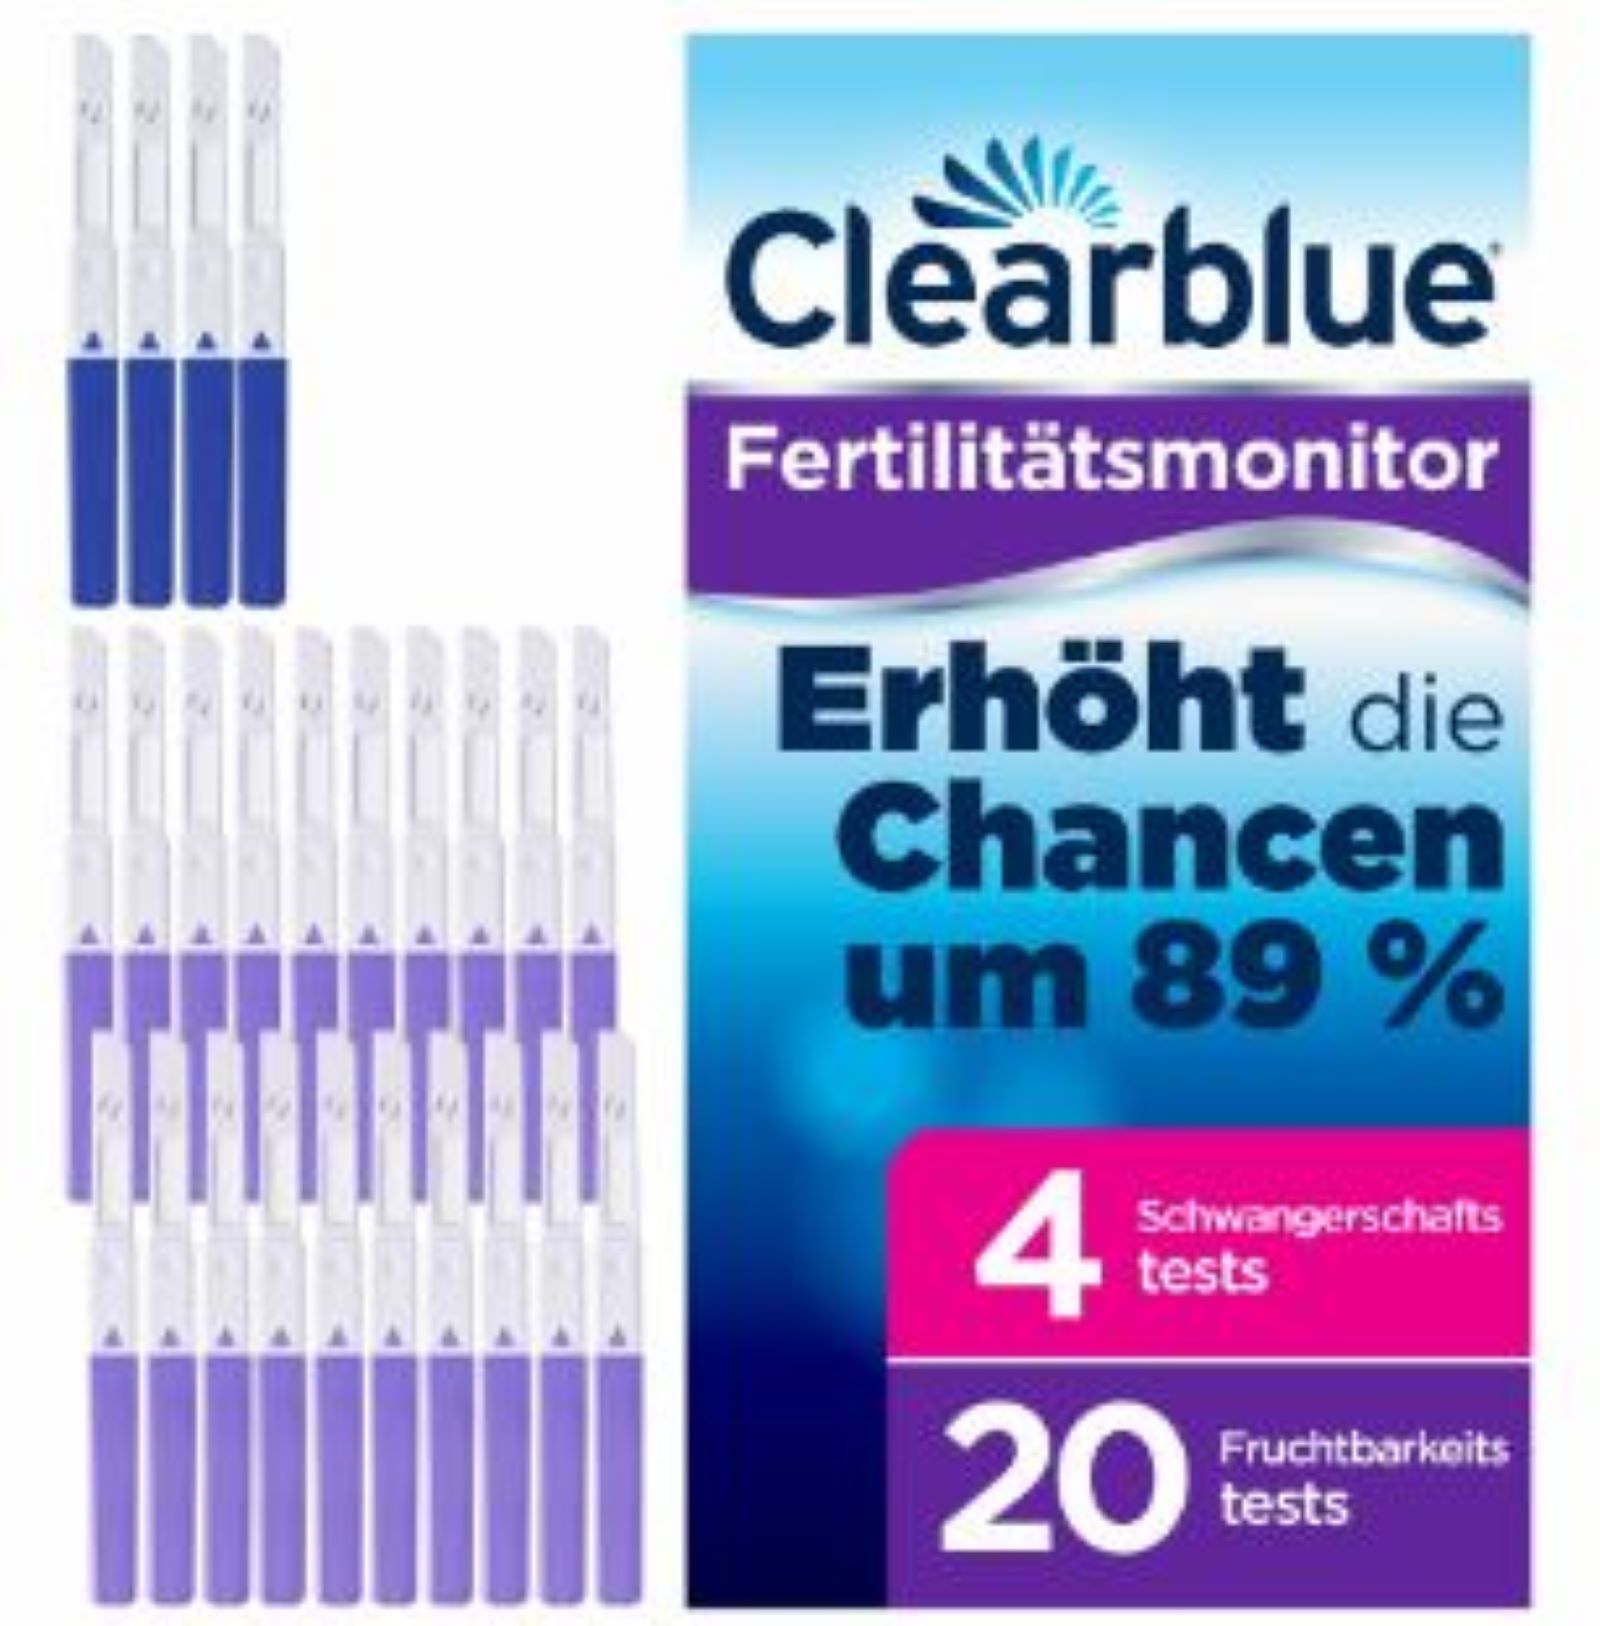 Clearblue Fertilitätsmonitor Advanced Teststäbchen 24 stk.